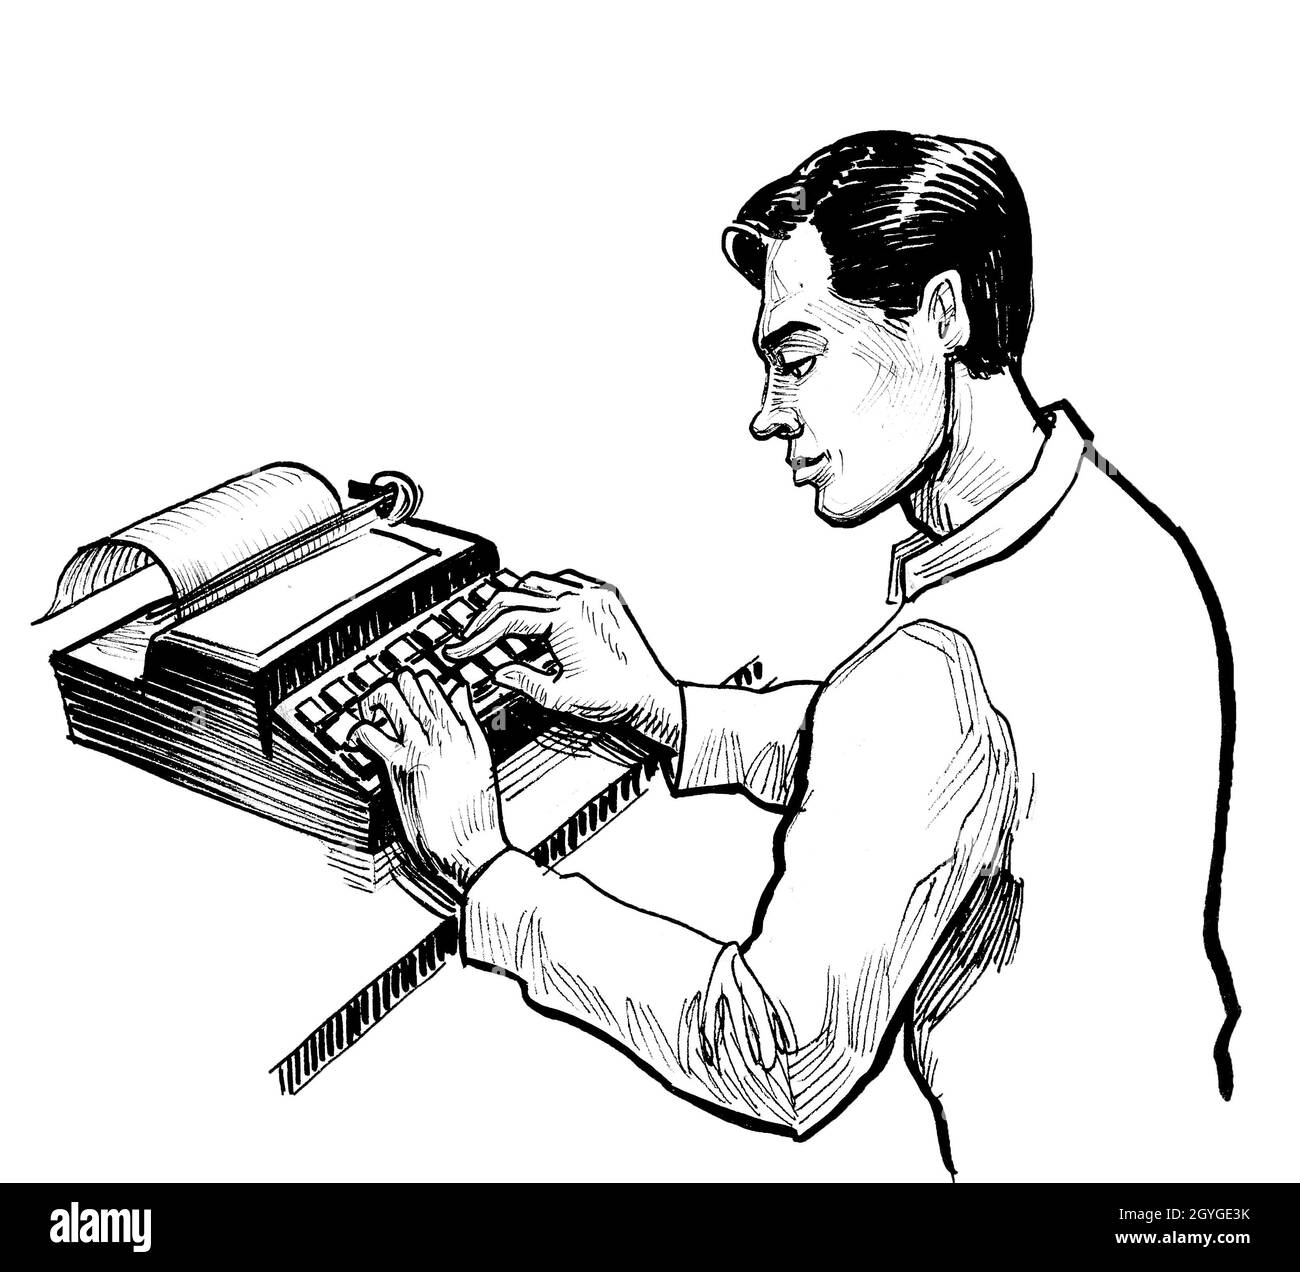 Tinta para maquina de escribir Imágenes de stock en blanco y negro - Alamy